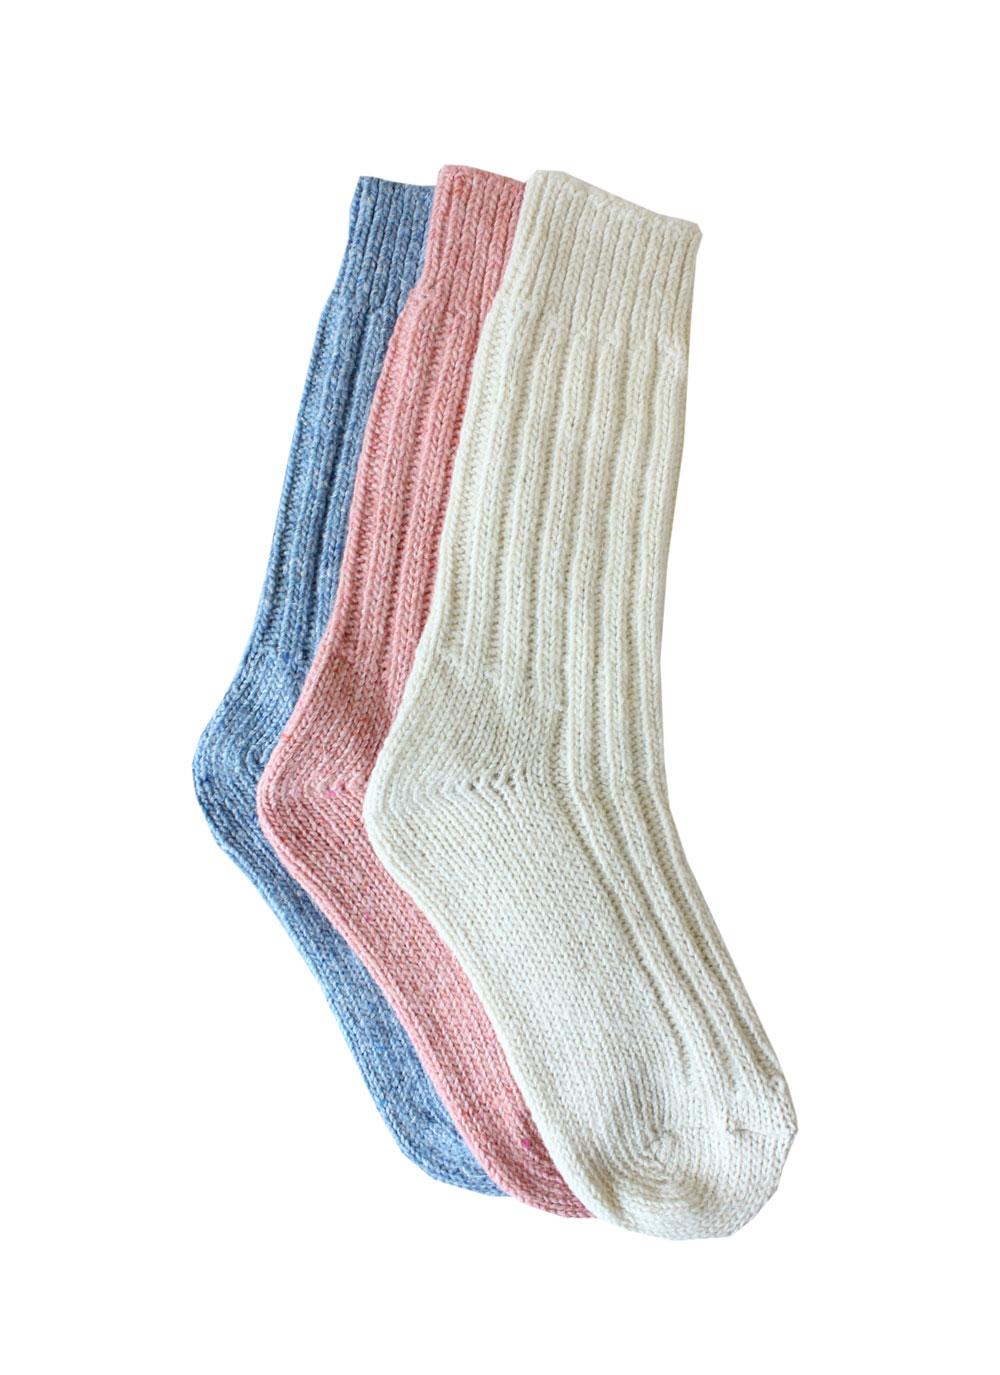 Ladies Wool Socks Natural Pink Blue | Blarney